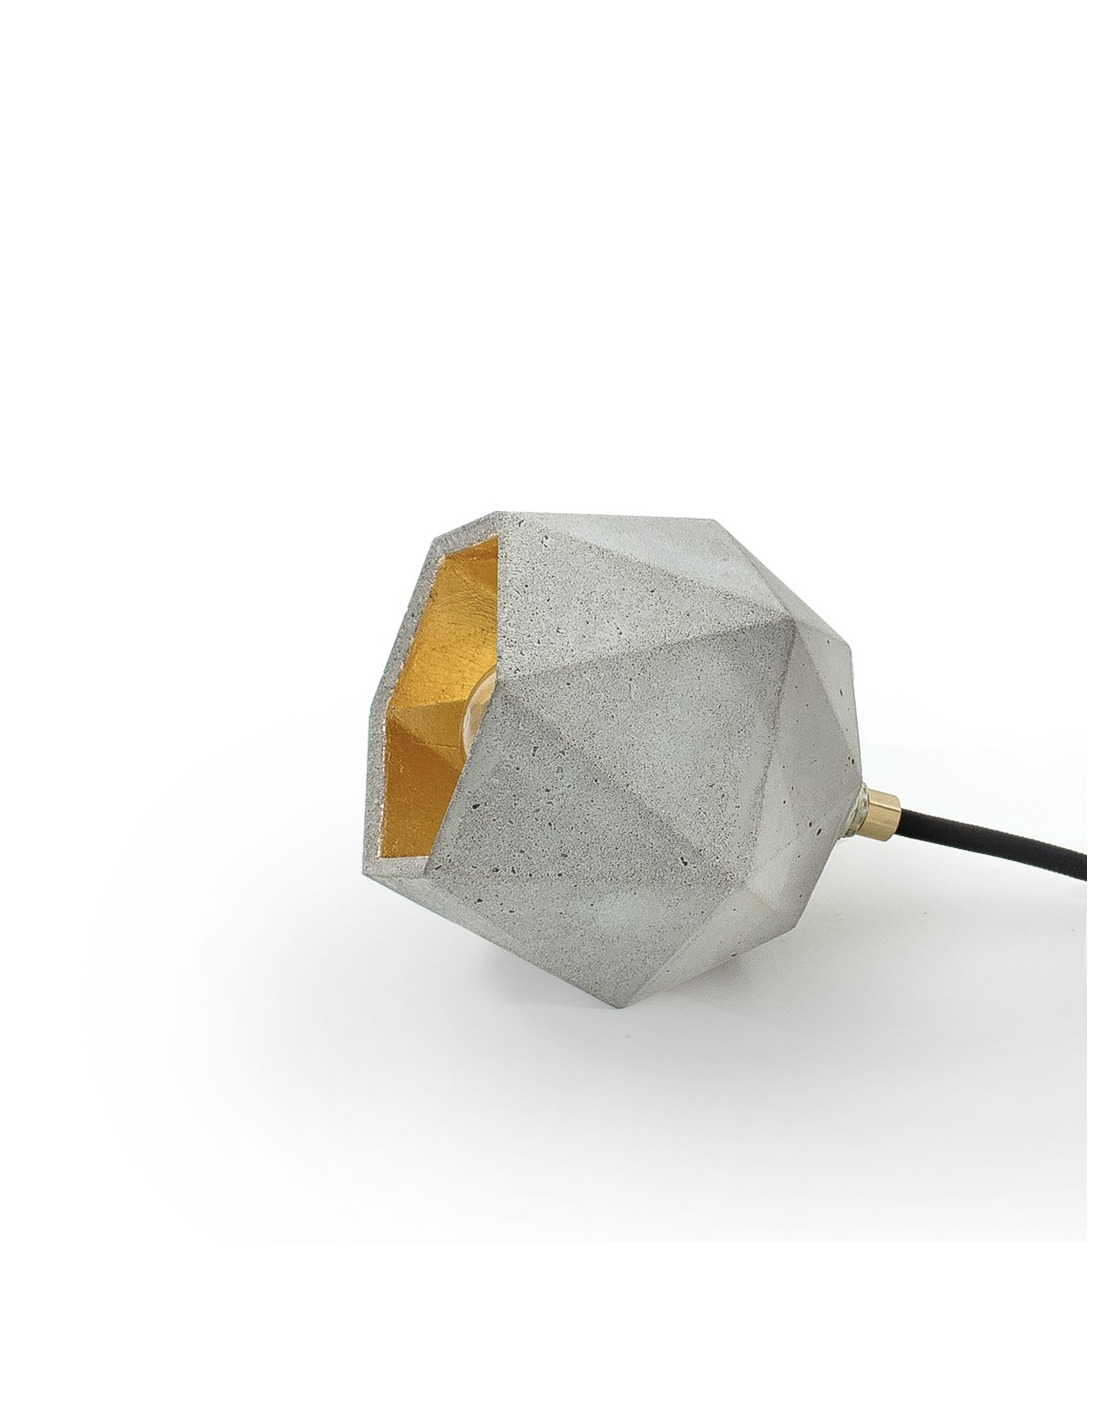 Lampe à poser Design T2 Triangle en béton par Stefan Gant x Gant light